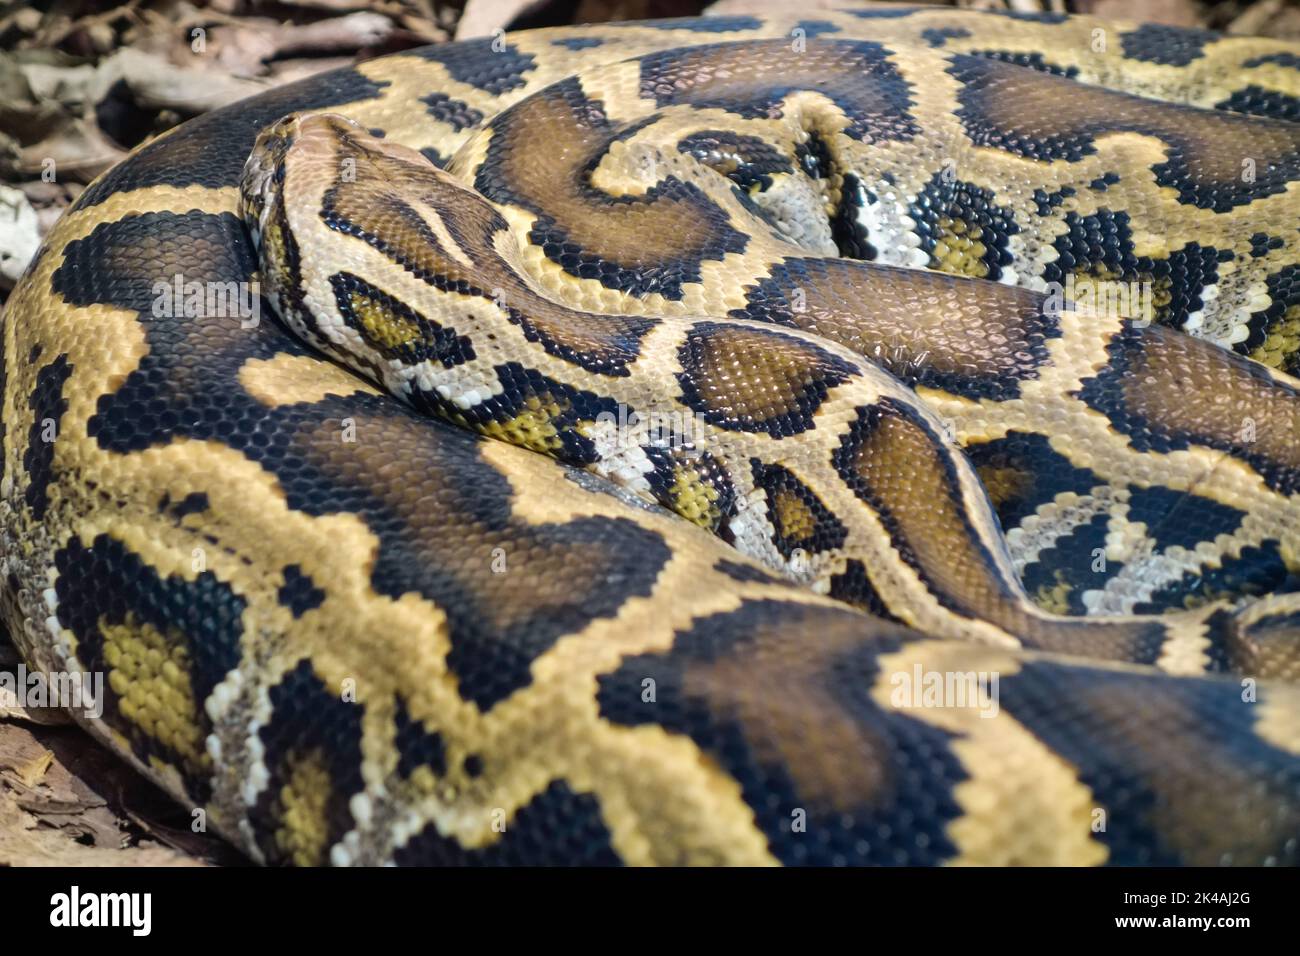 Gros plan sur un serpent Python birman, Python bivittatus, enroulé et statique sur le sol. Banque D'Images